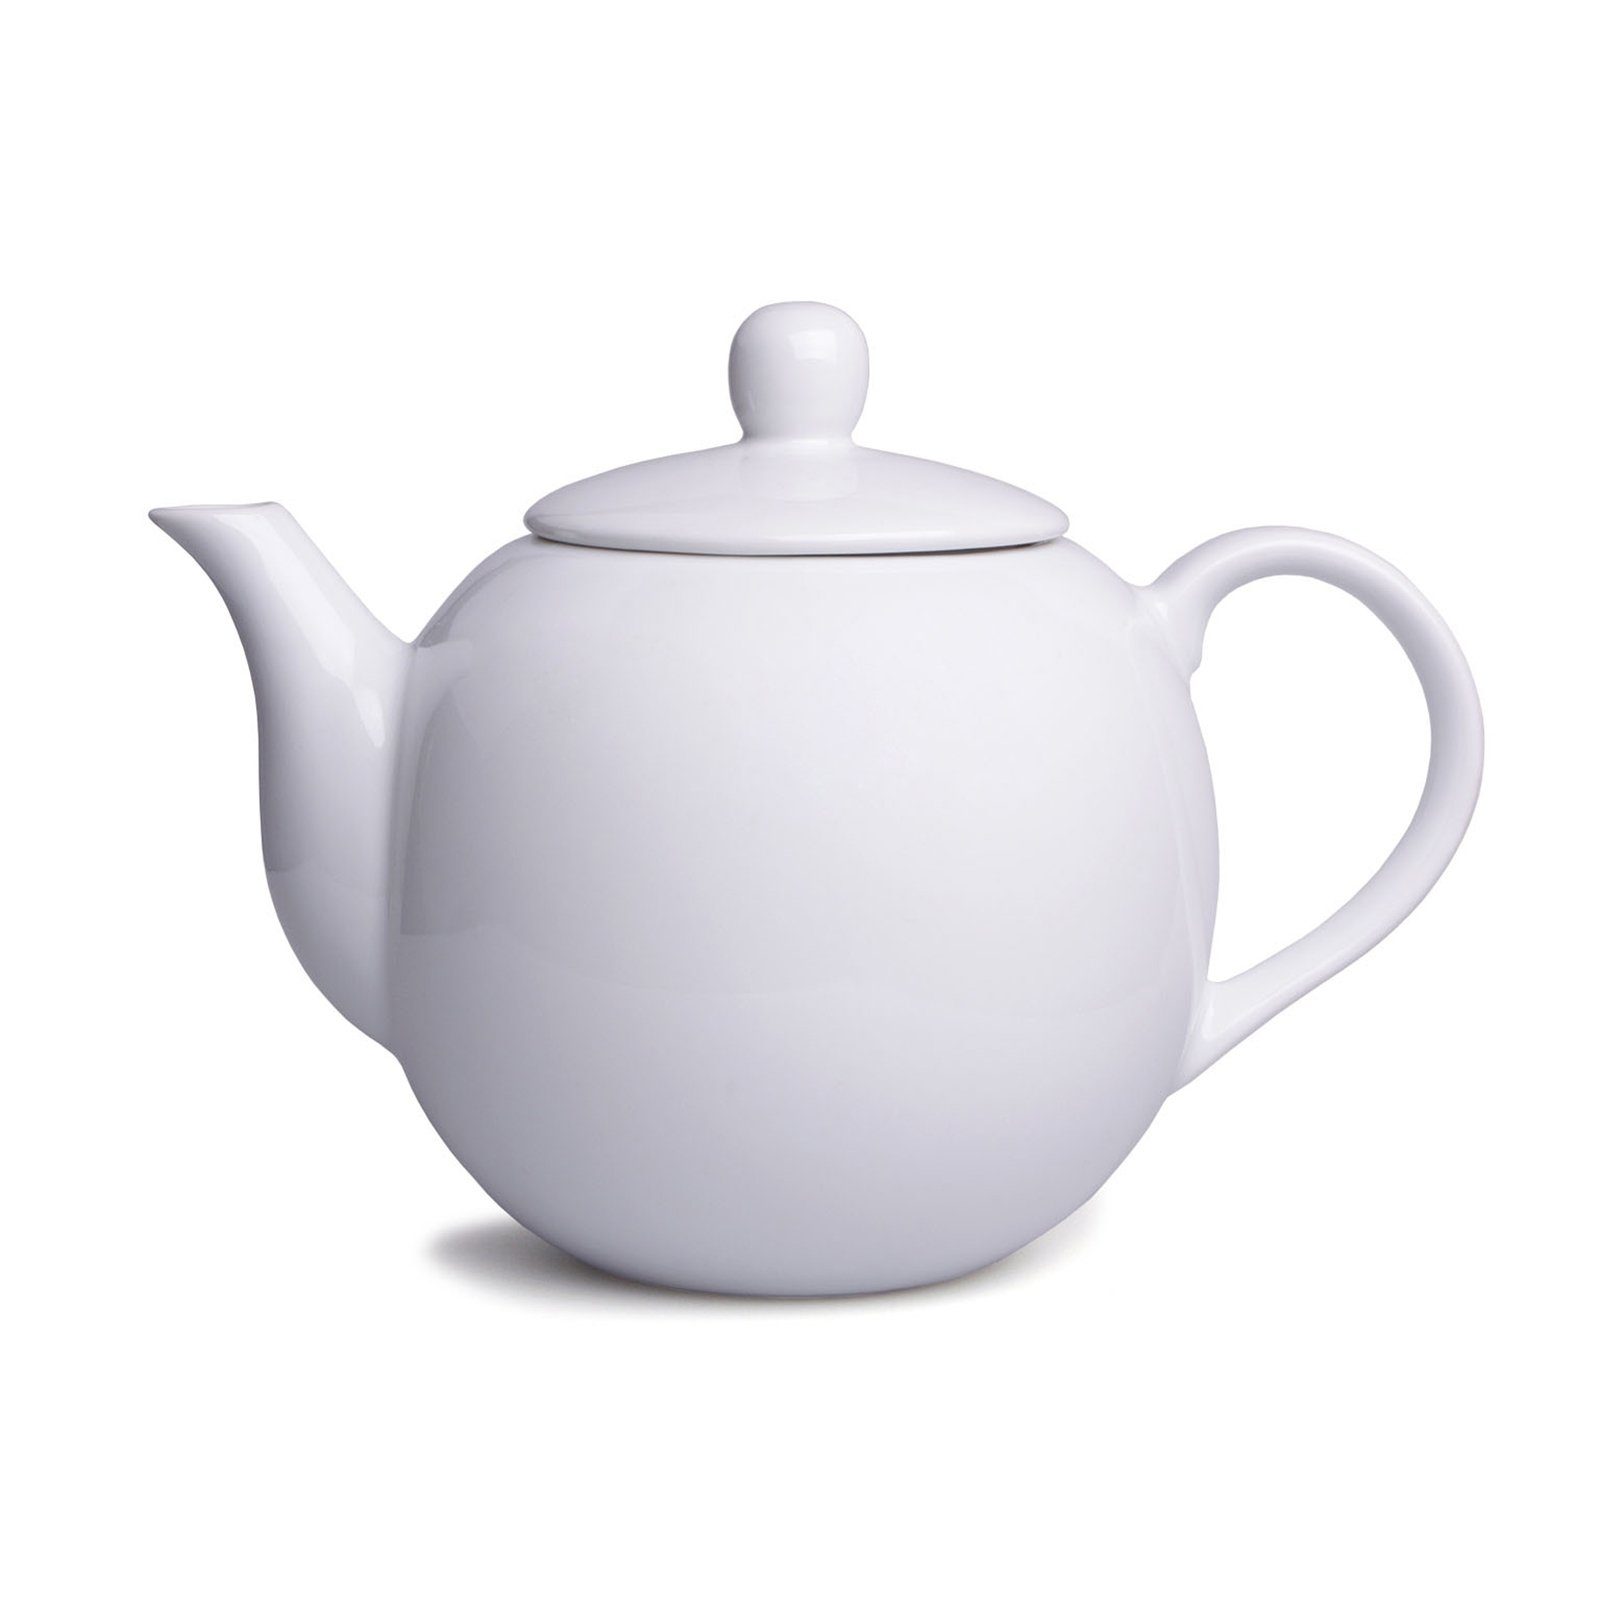 Neuetischkultur Teekanne Teekanne Weiß Porzellan, Porzellan Kanne l, 1.1 Vintage